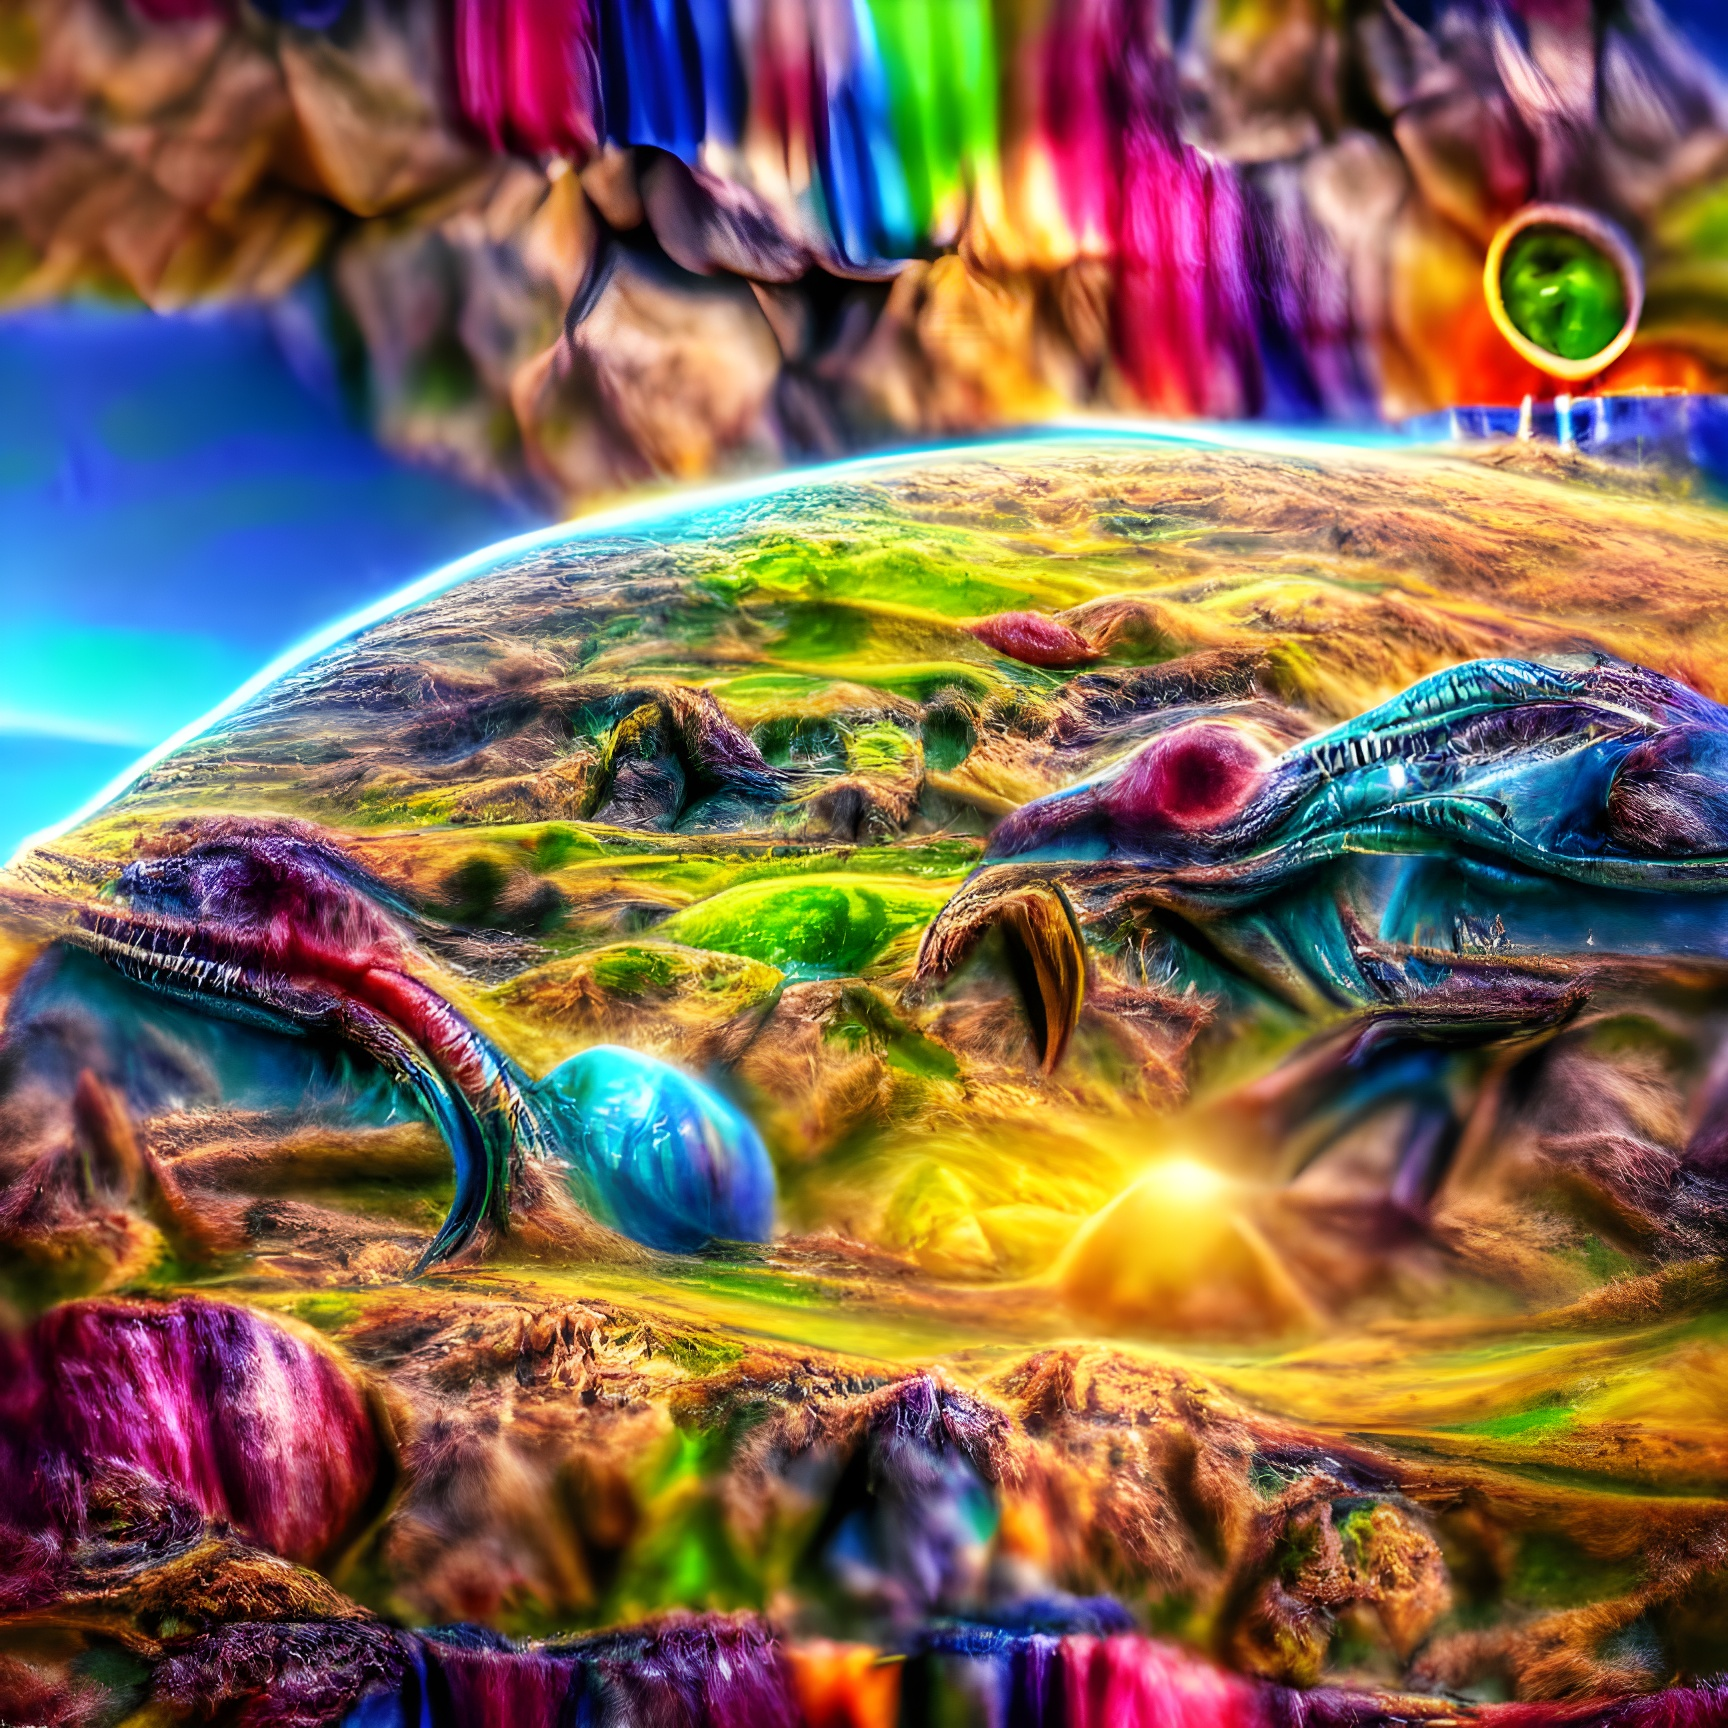 Alien Worlds #5